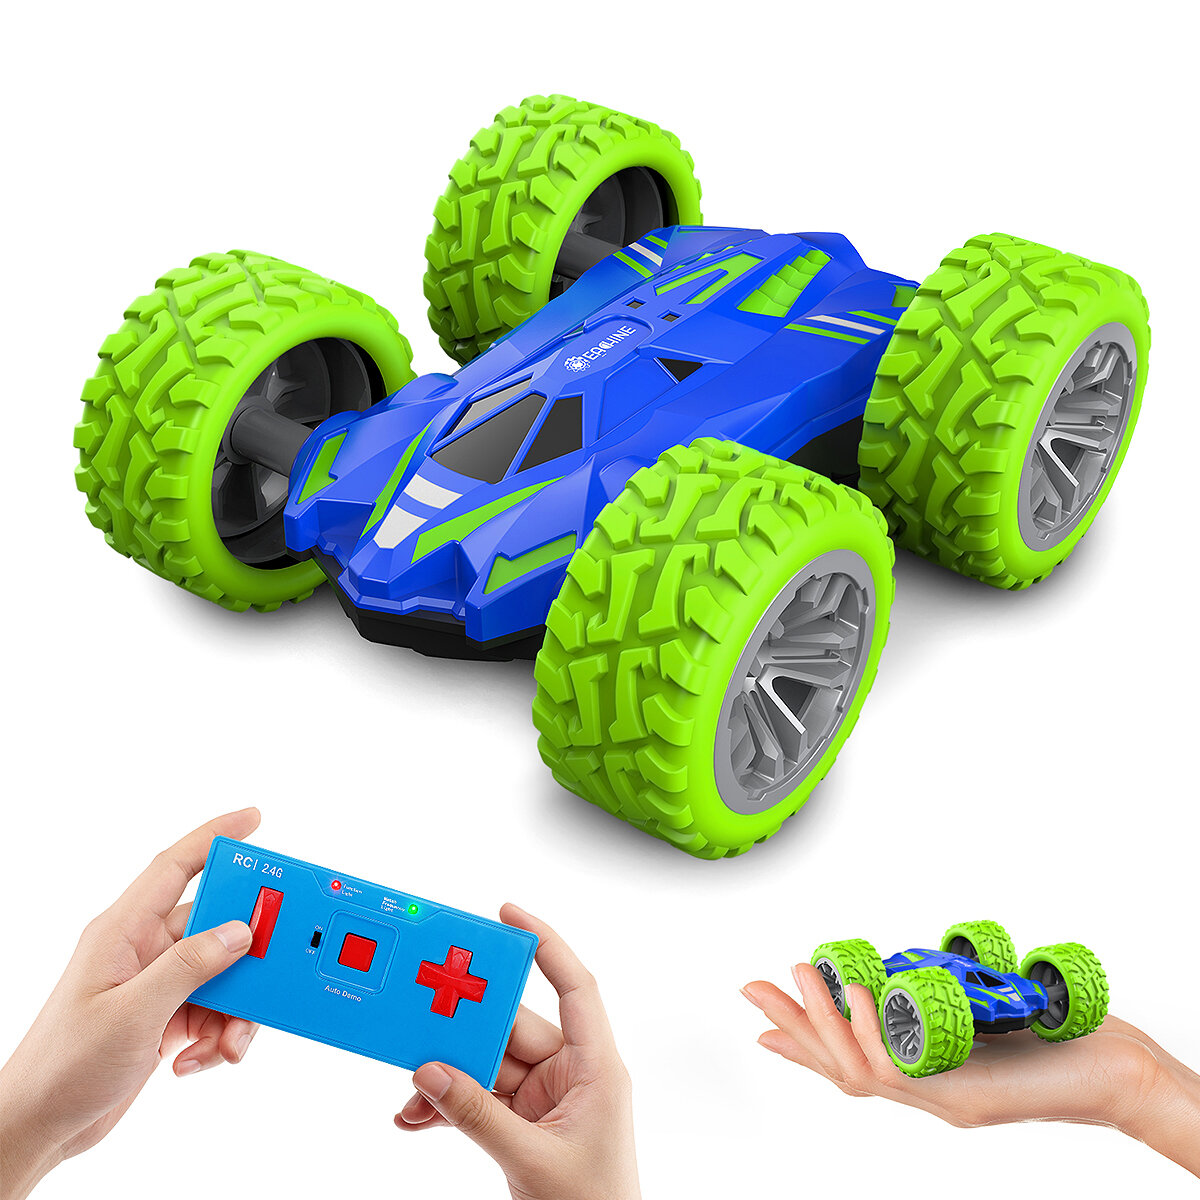 Στα 6.49 € από αποθήκη Κίνας | Eachine EC07 RC Car 2.4G 4CH Stunt Drift Deformation Remote Control Rock Crawler Roll Flip Kids Robot Auto Toy